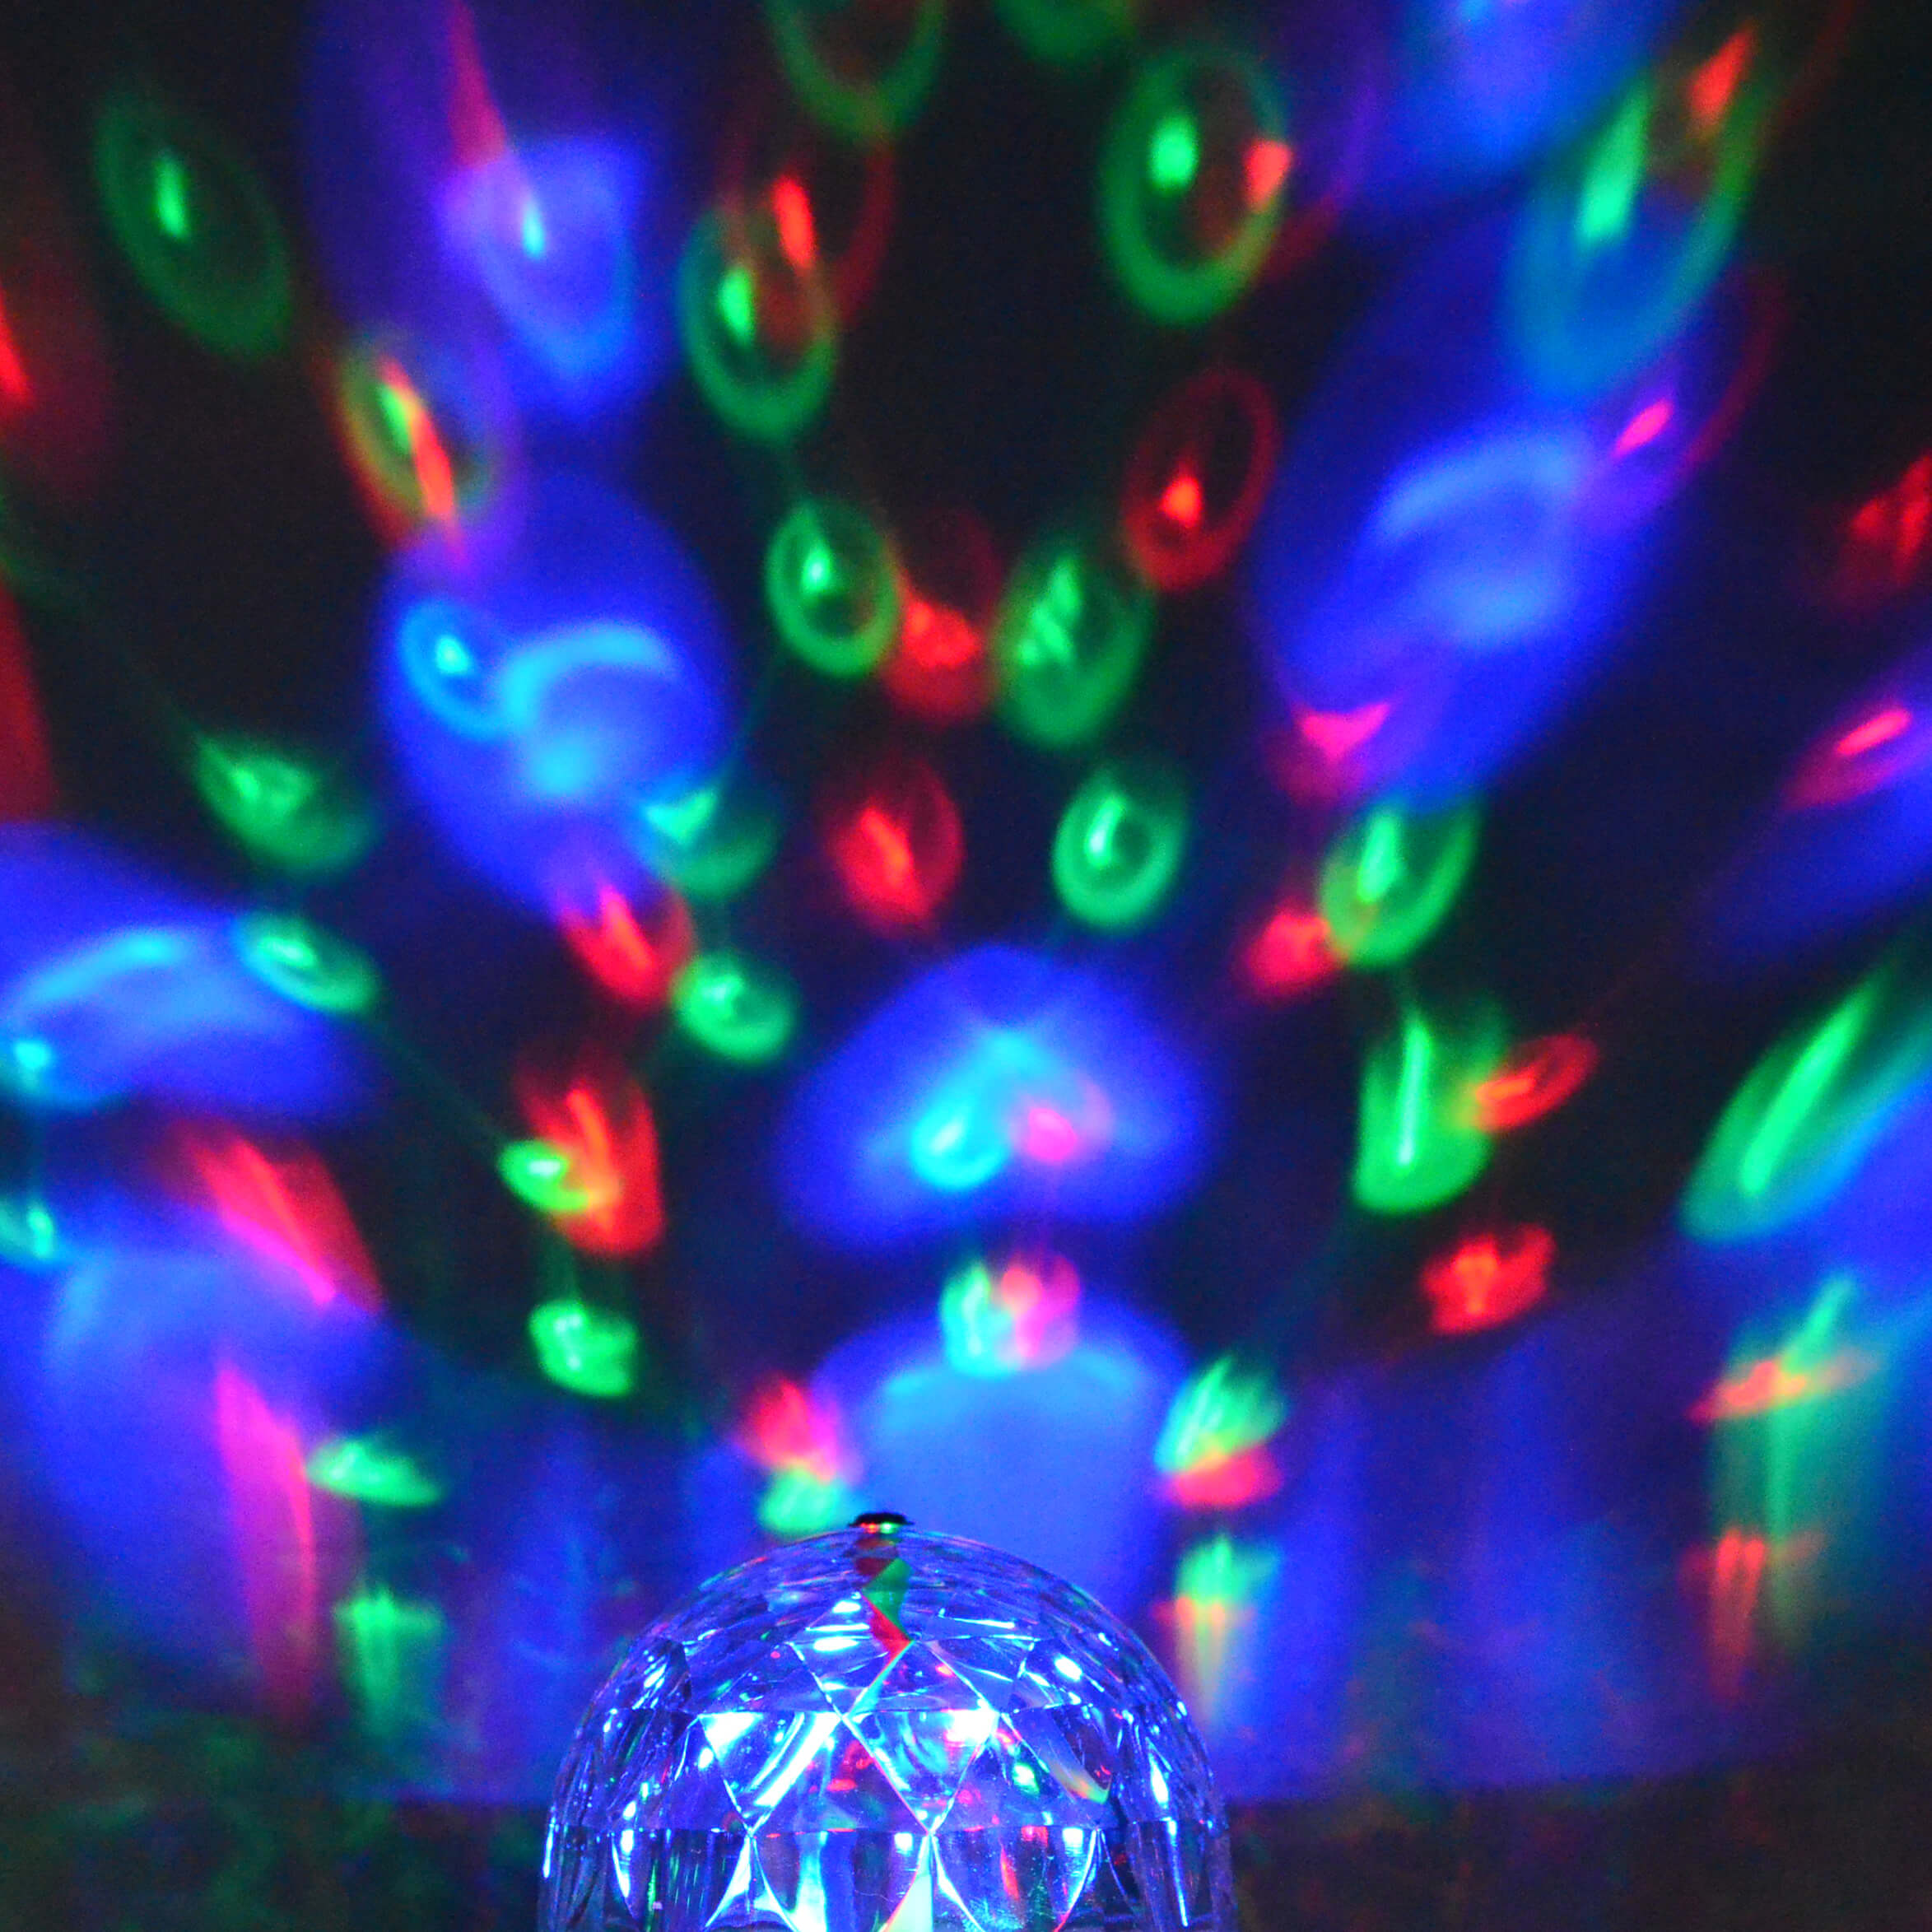 X4-LIFE LED Partyleuchte RGB rotierend, Lichteffekt, 3 Watt, 10.5 cm